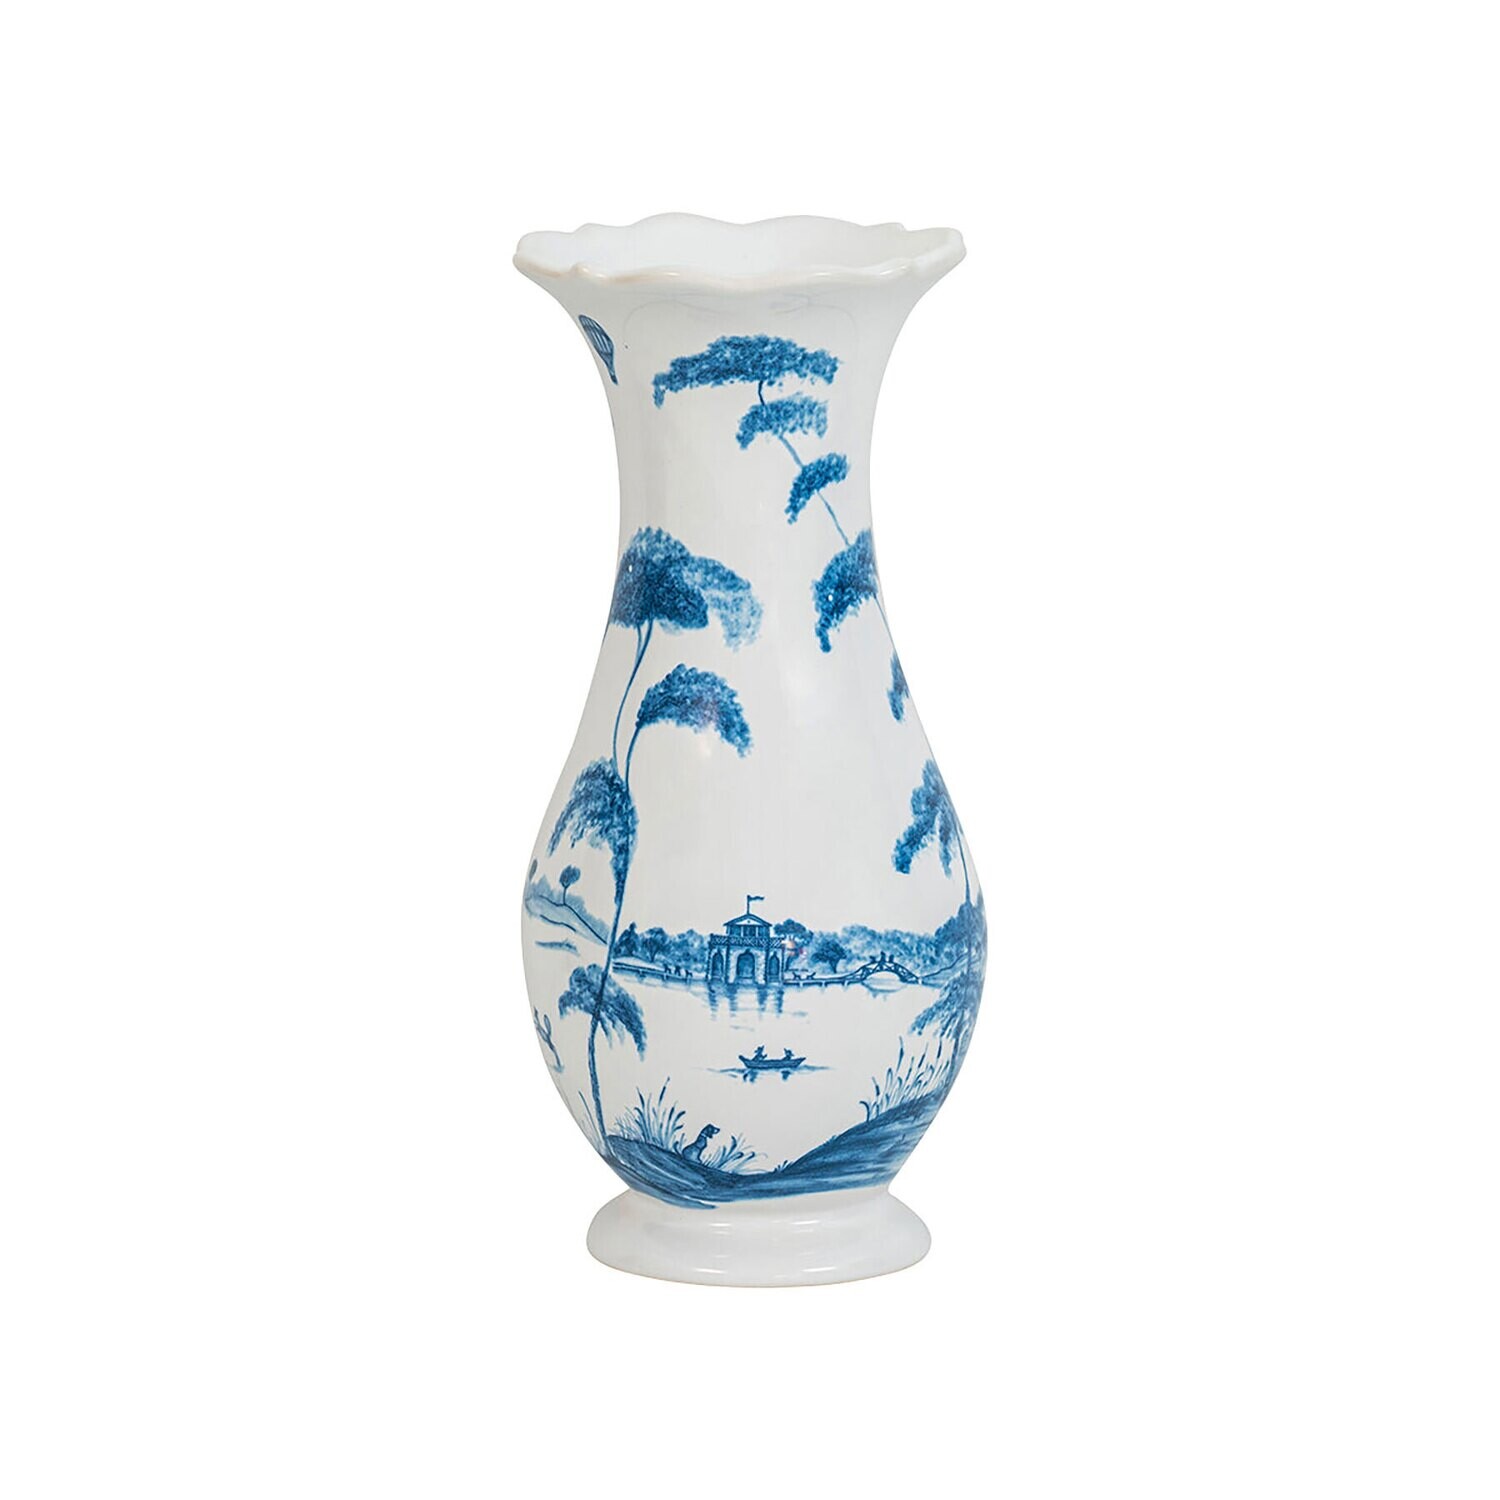 Juliska Country Estate Delft Blue 9 Inch Vase CE92/44